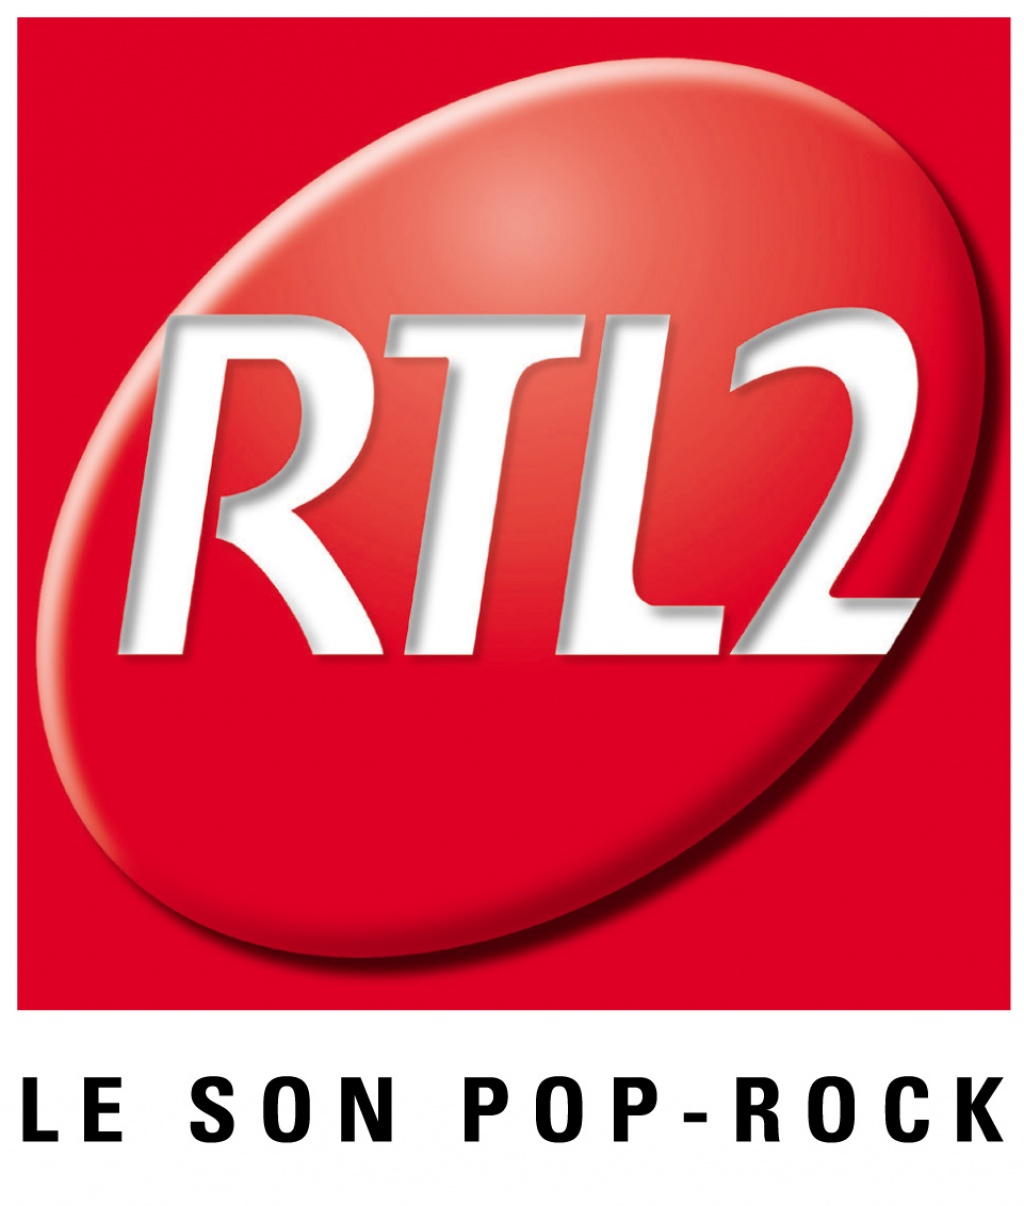 La Direction des Stations Locales RTL2 / Fun Radio recrute un producteur sonore